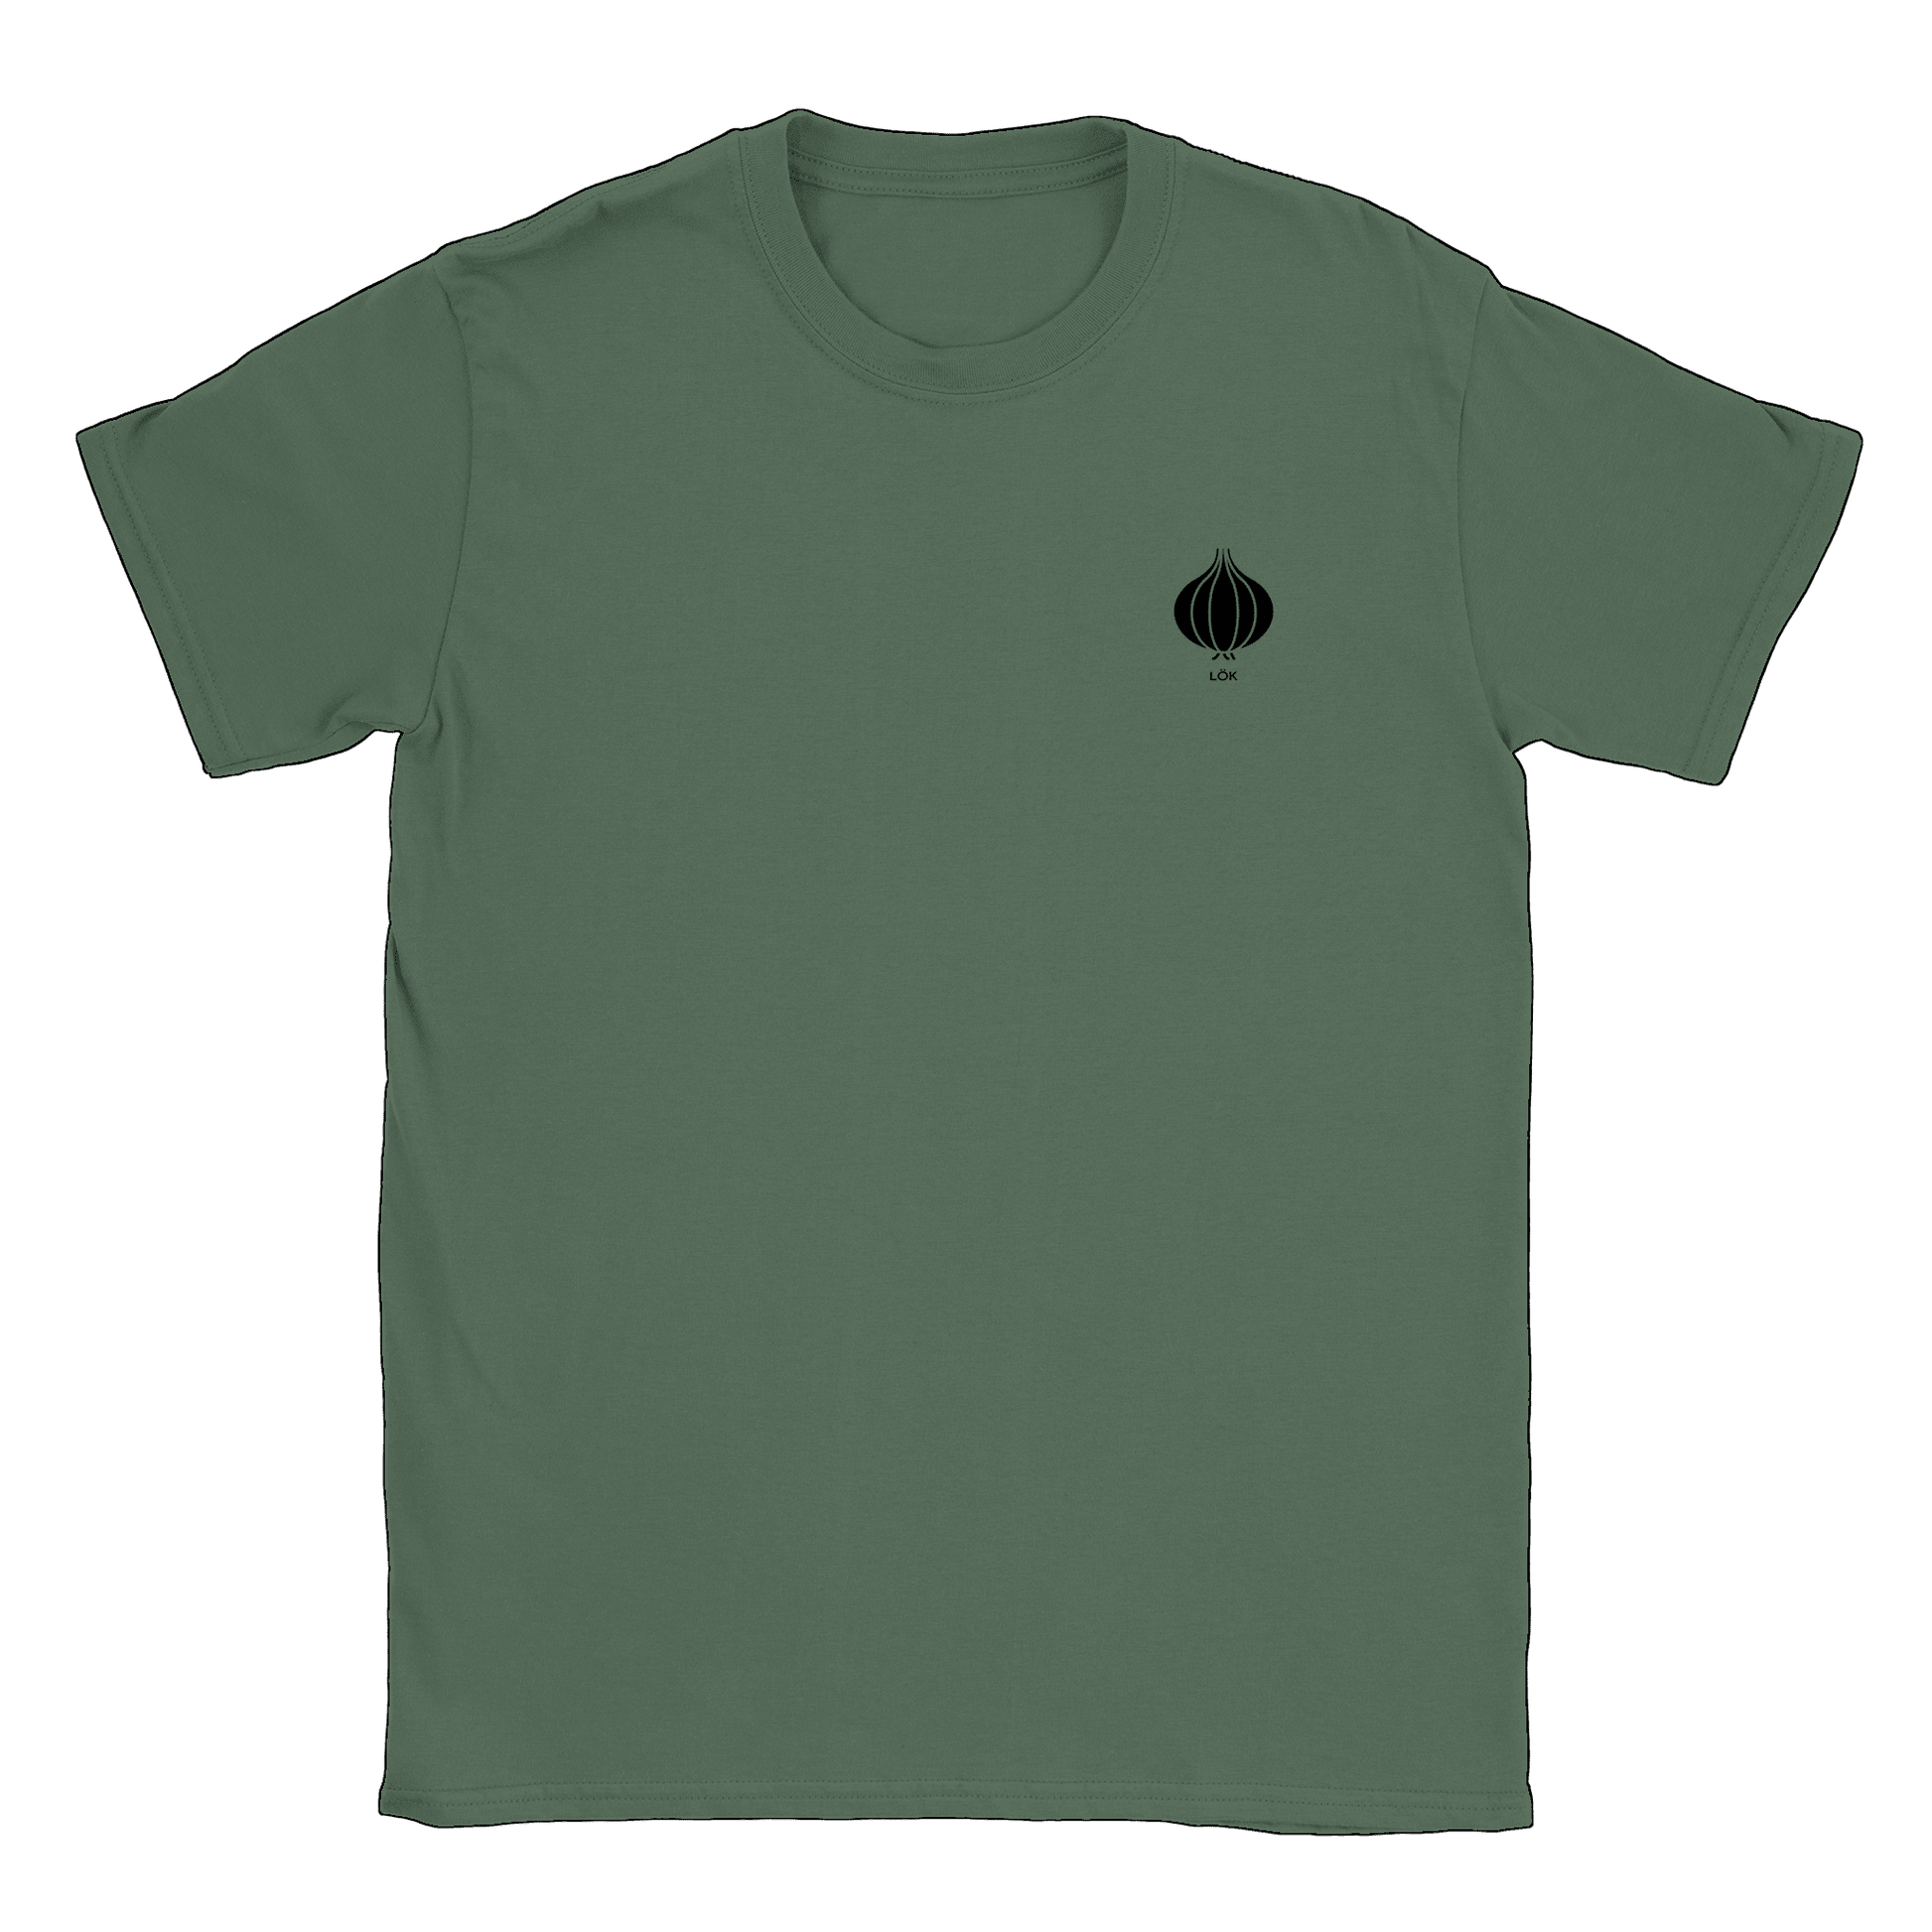 Lök liten - T-shirt Military Green